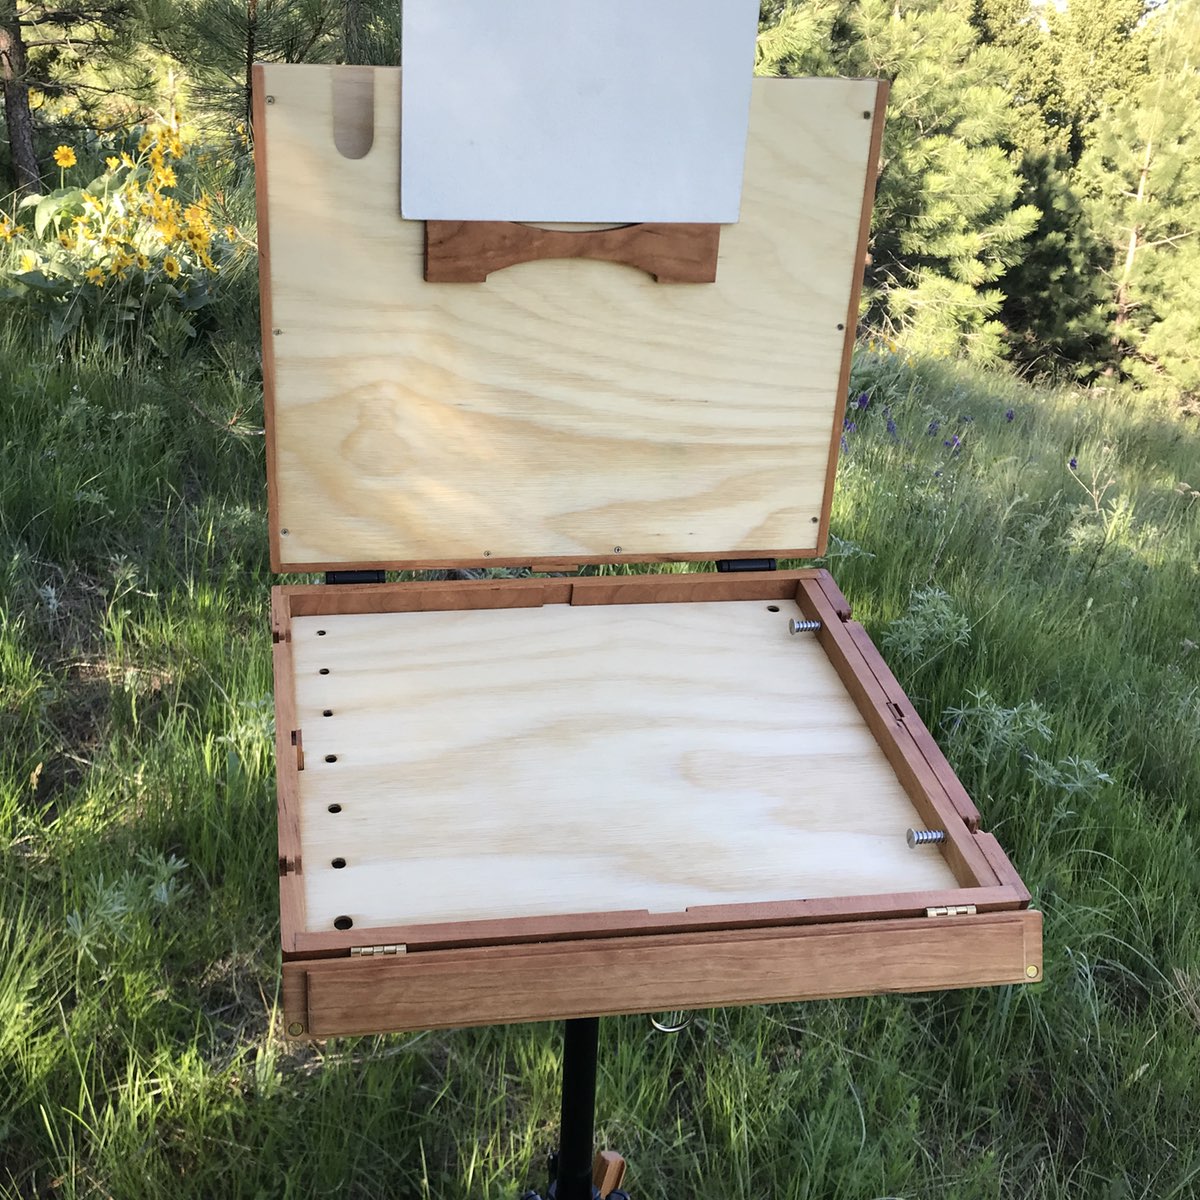 8 x 10 Blackfoot Lite Pochade Box – Alla Prima Pochade